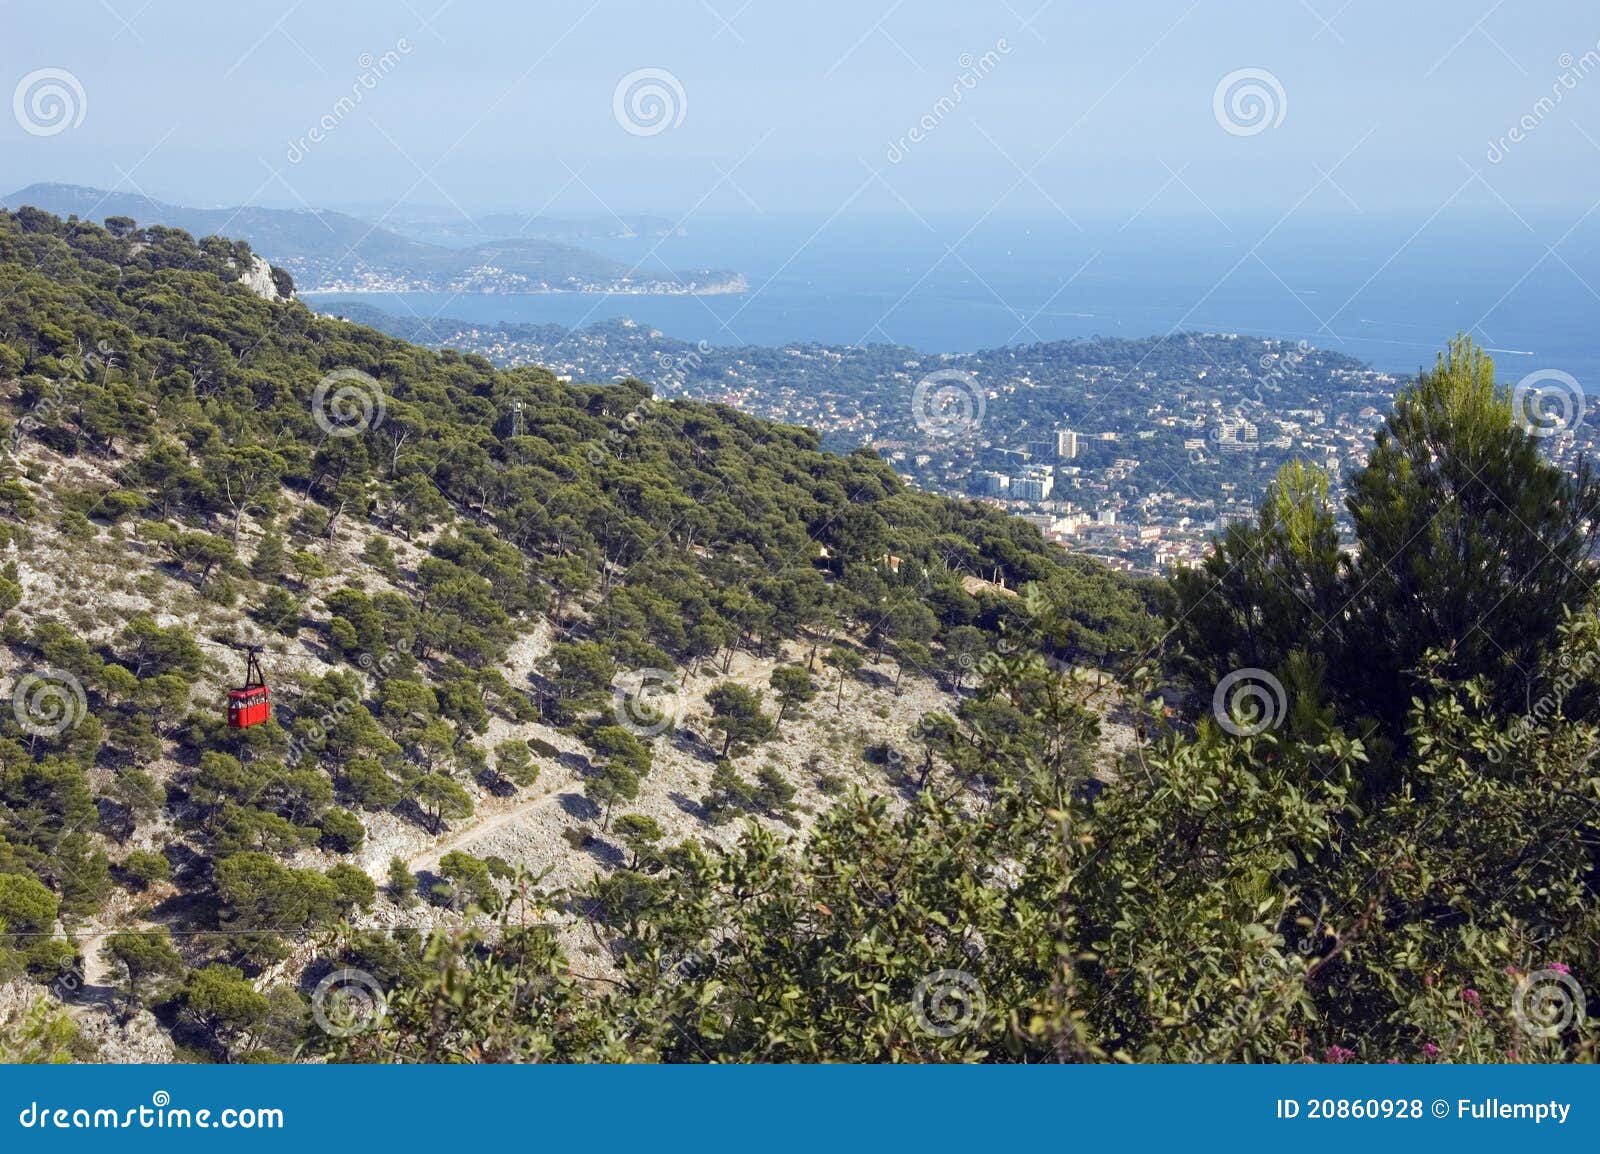 Schacht von Toulon und von Seilzug Faron. Roter Seilzug Faron und Ansicht des Schachtes von Toulon und von französischem Riviera laufen leer